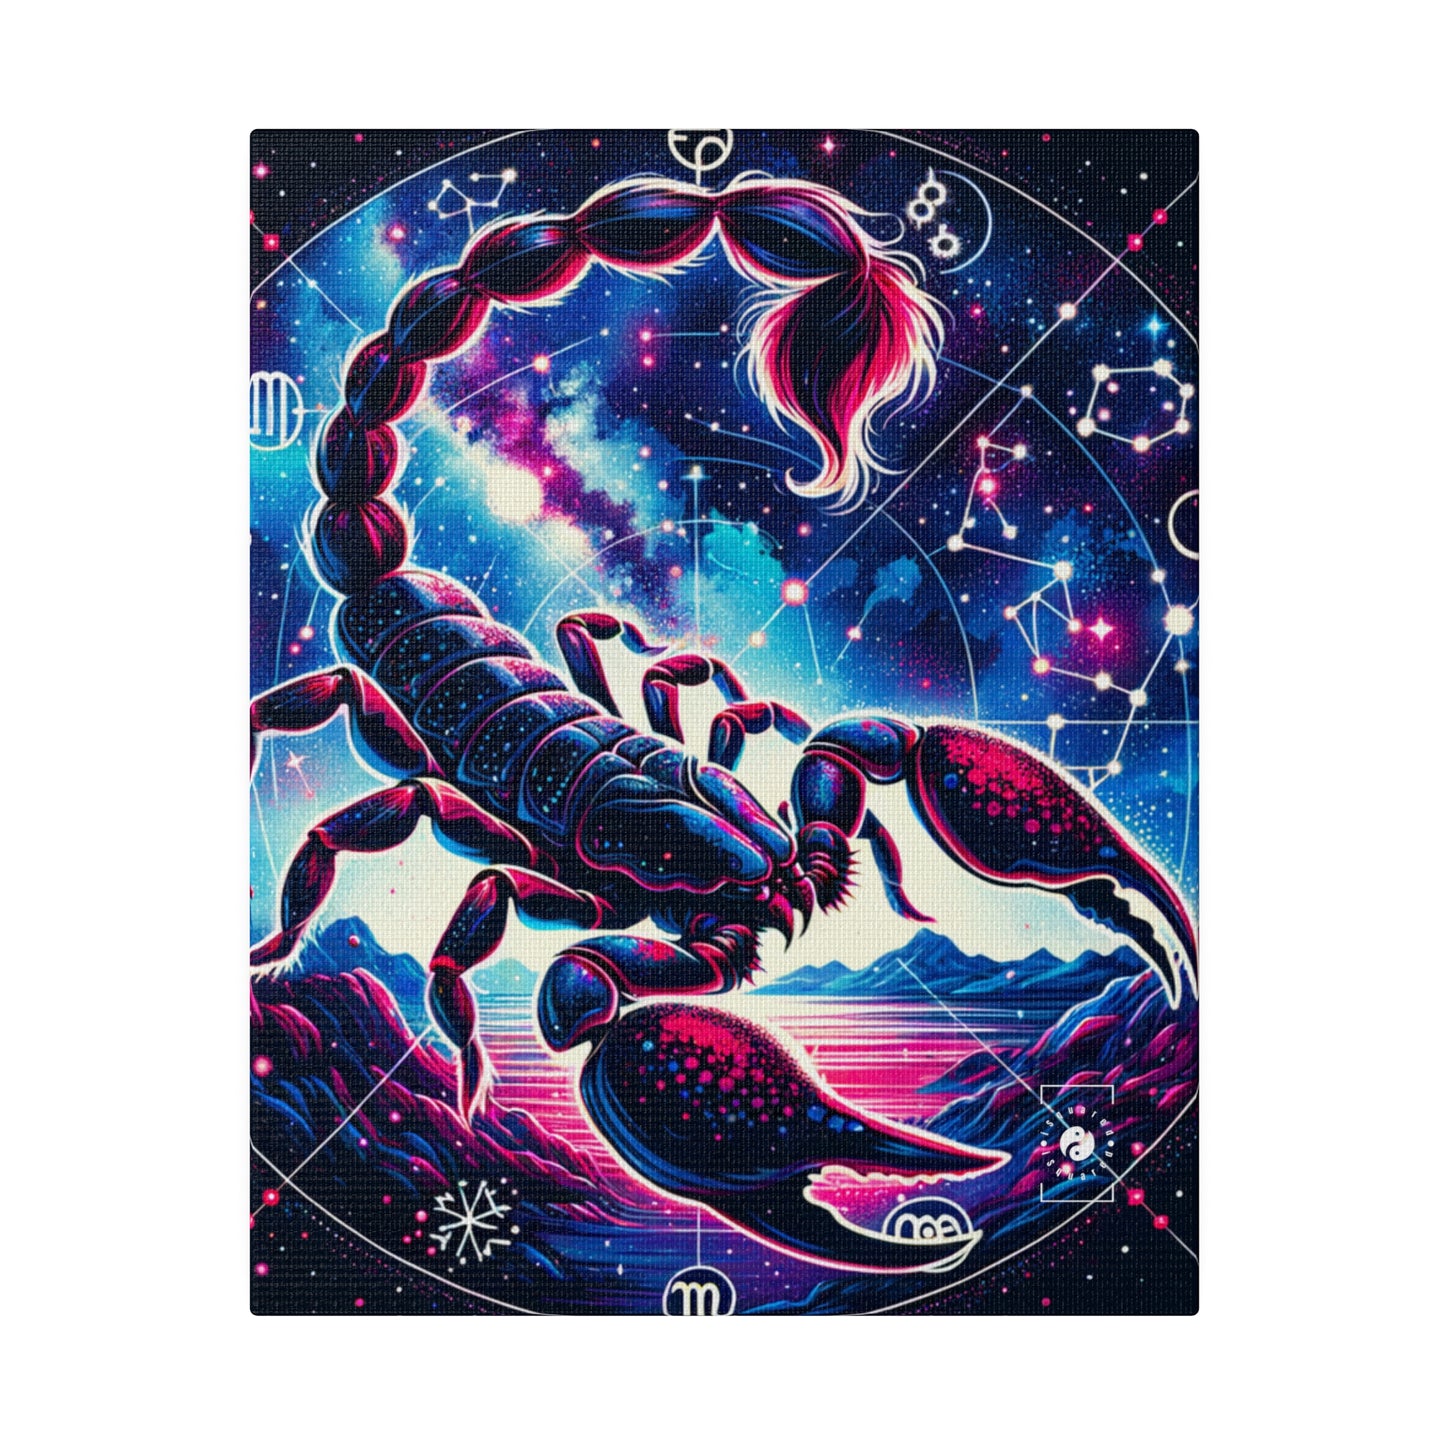 Crimson Scorpio - Art Print Canvas